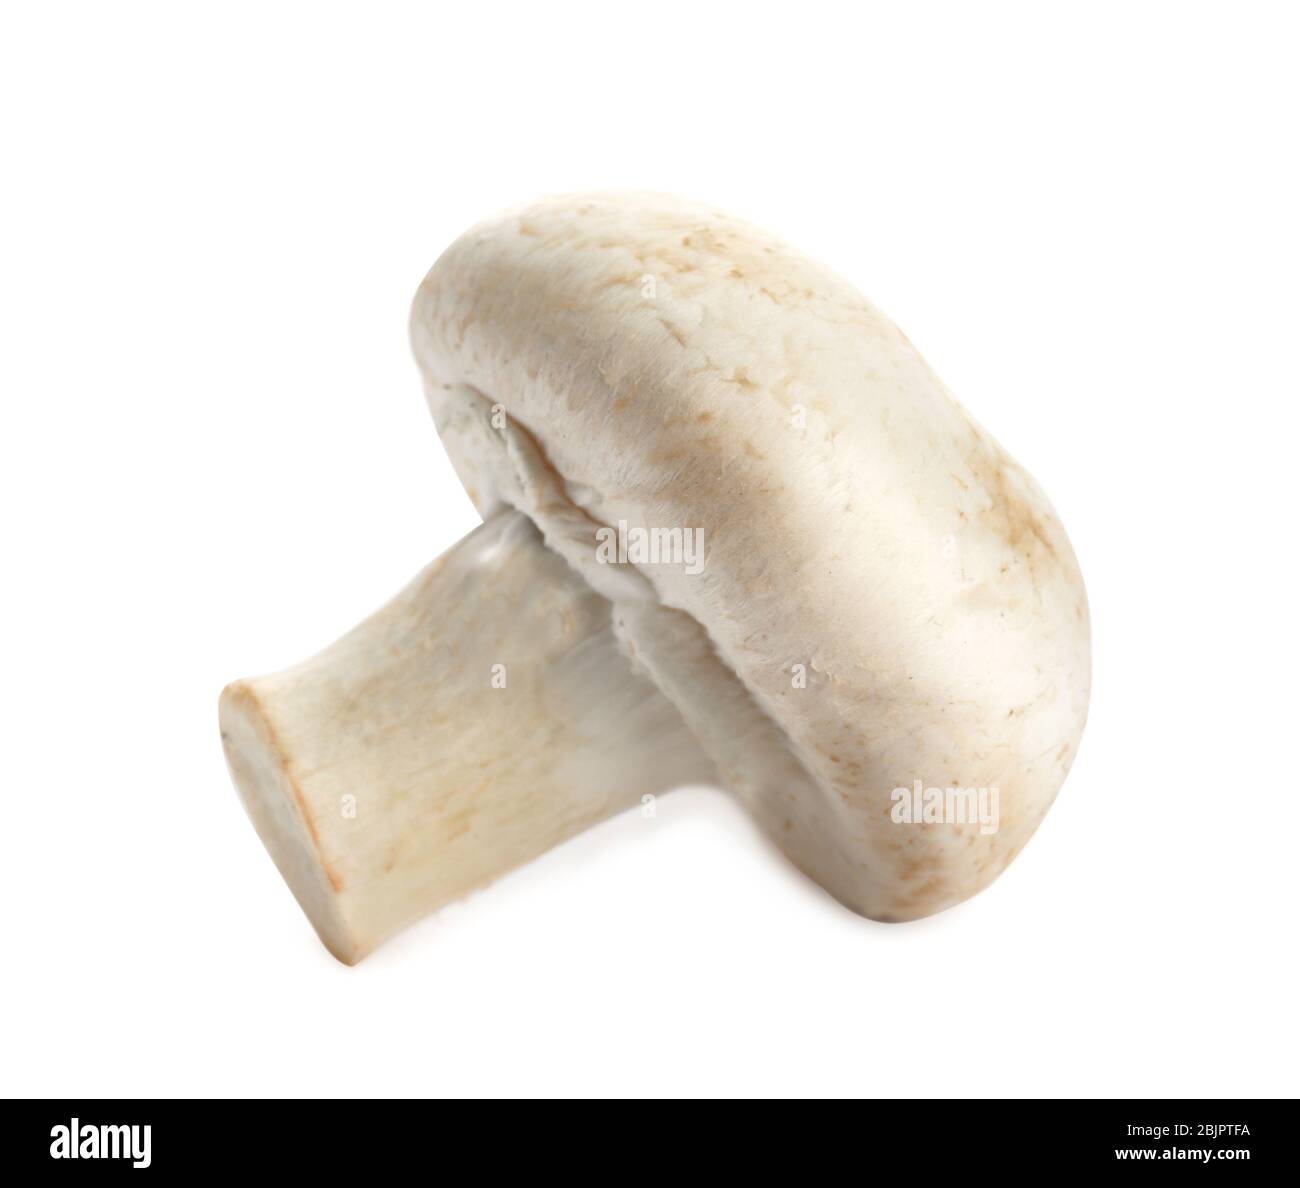 Raw mushroom on white background Stock Photo